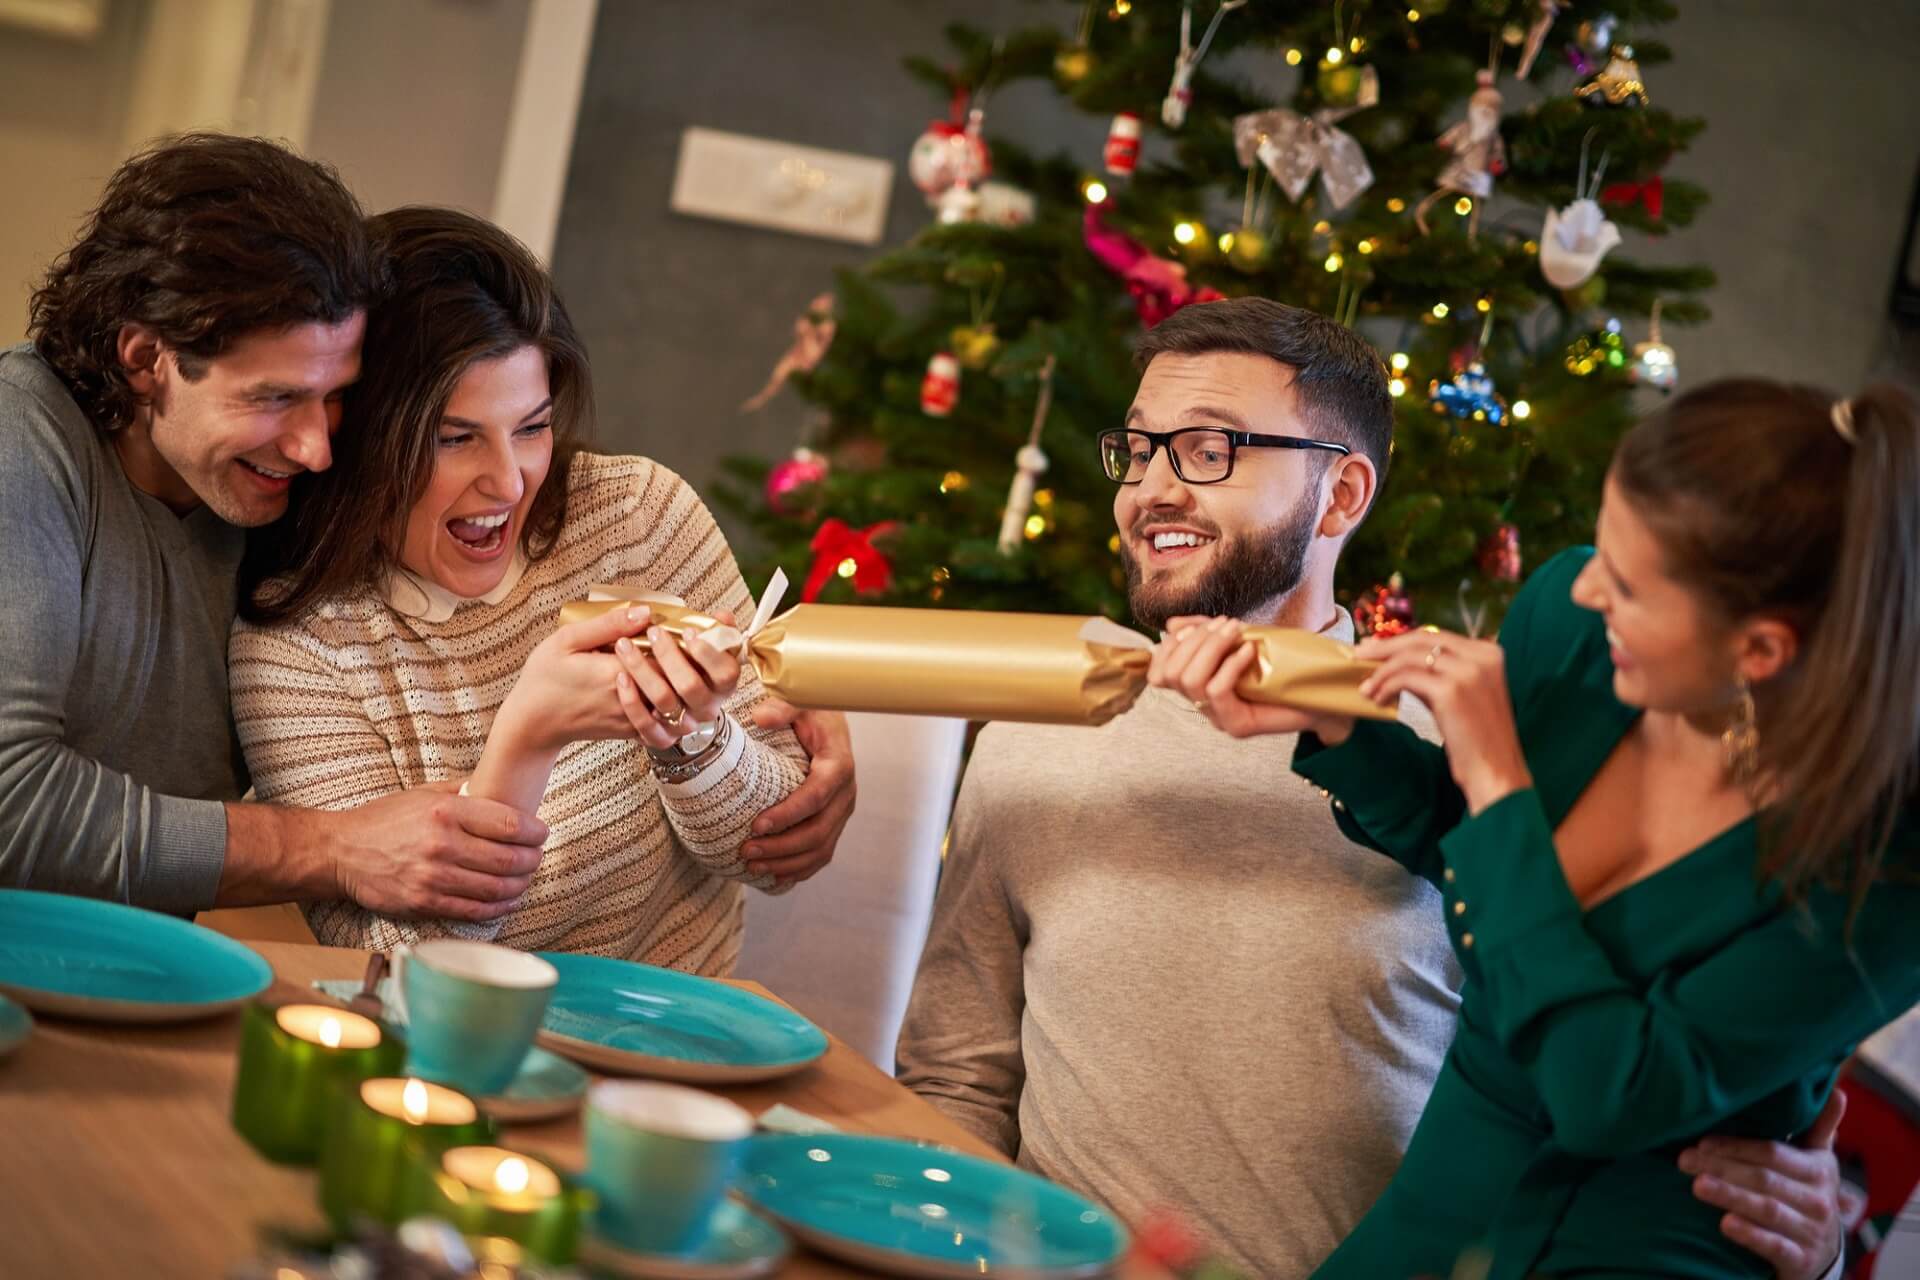 Christmas crackers to popularny element kolacji w Boże Narodzenie w UK